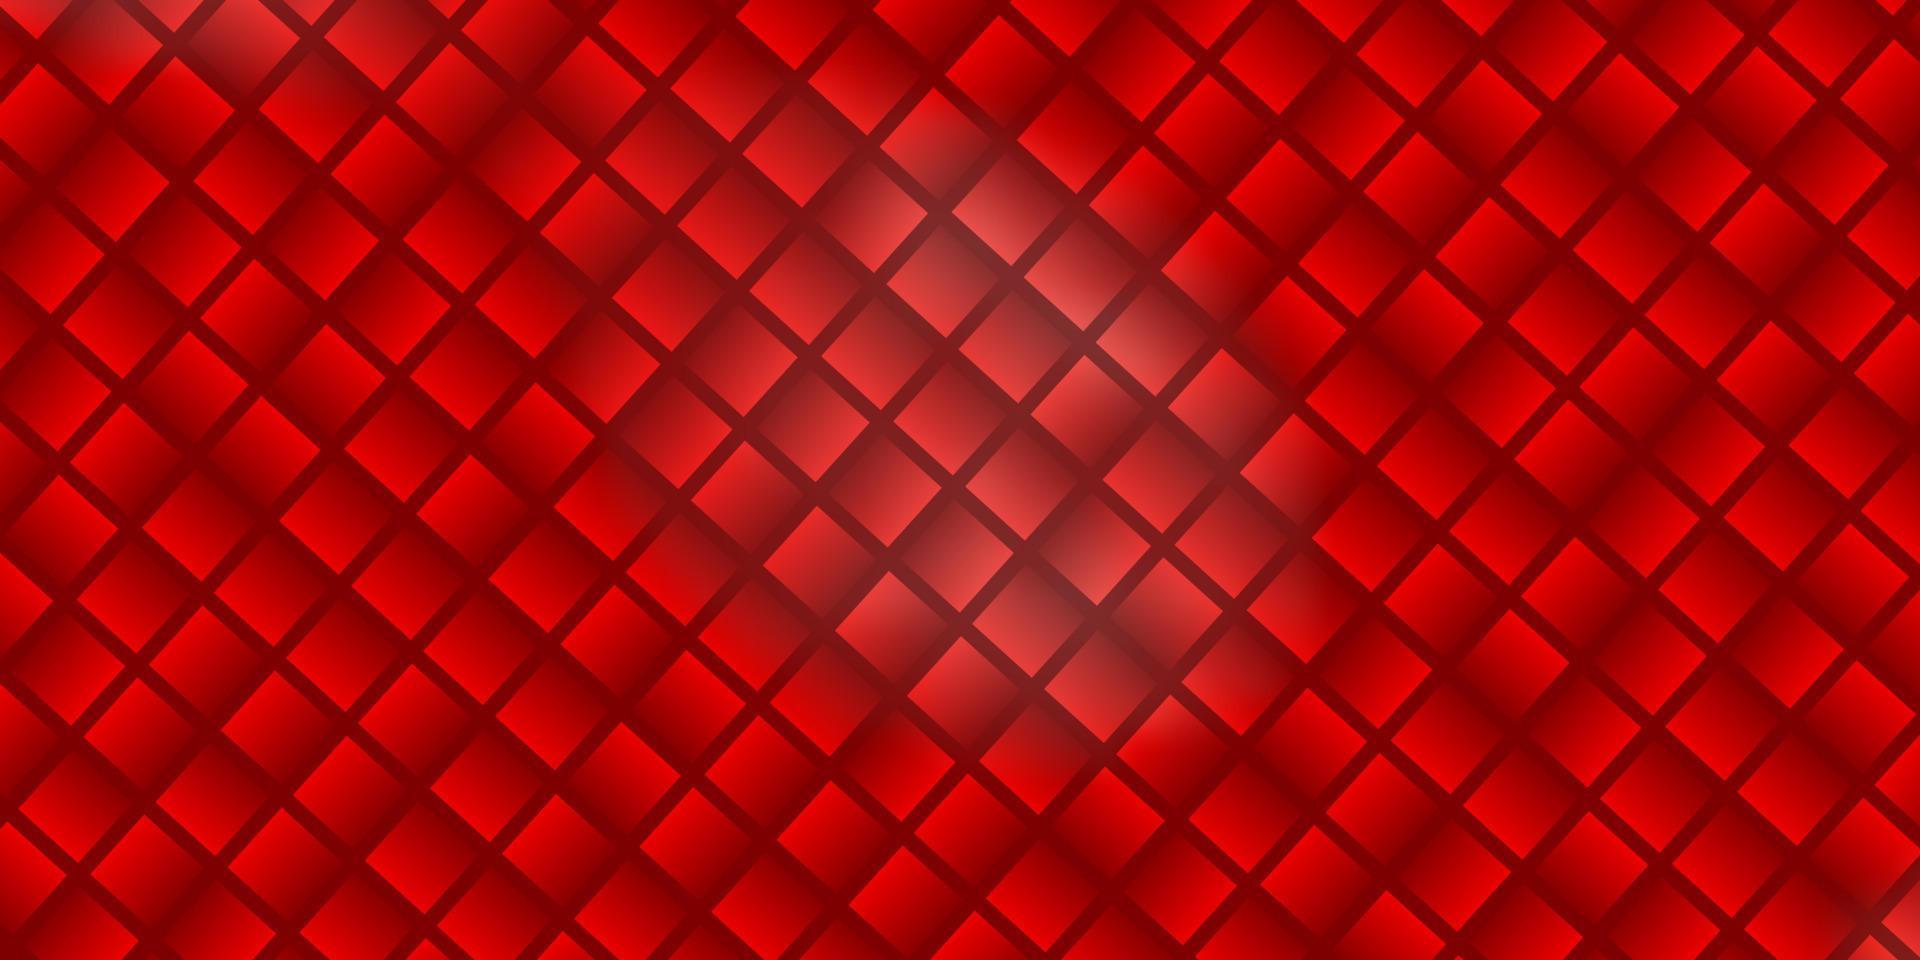 textura de vector rojo claro en estilo rectangular.